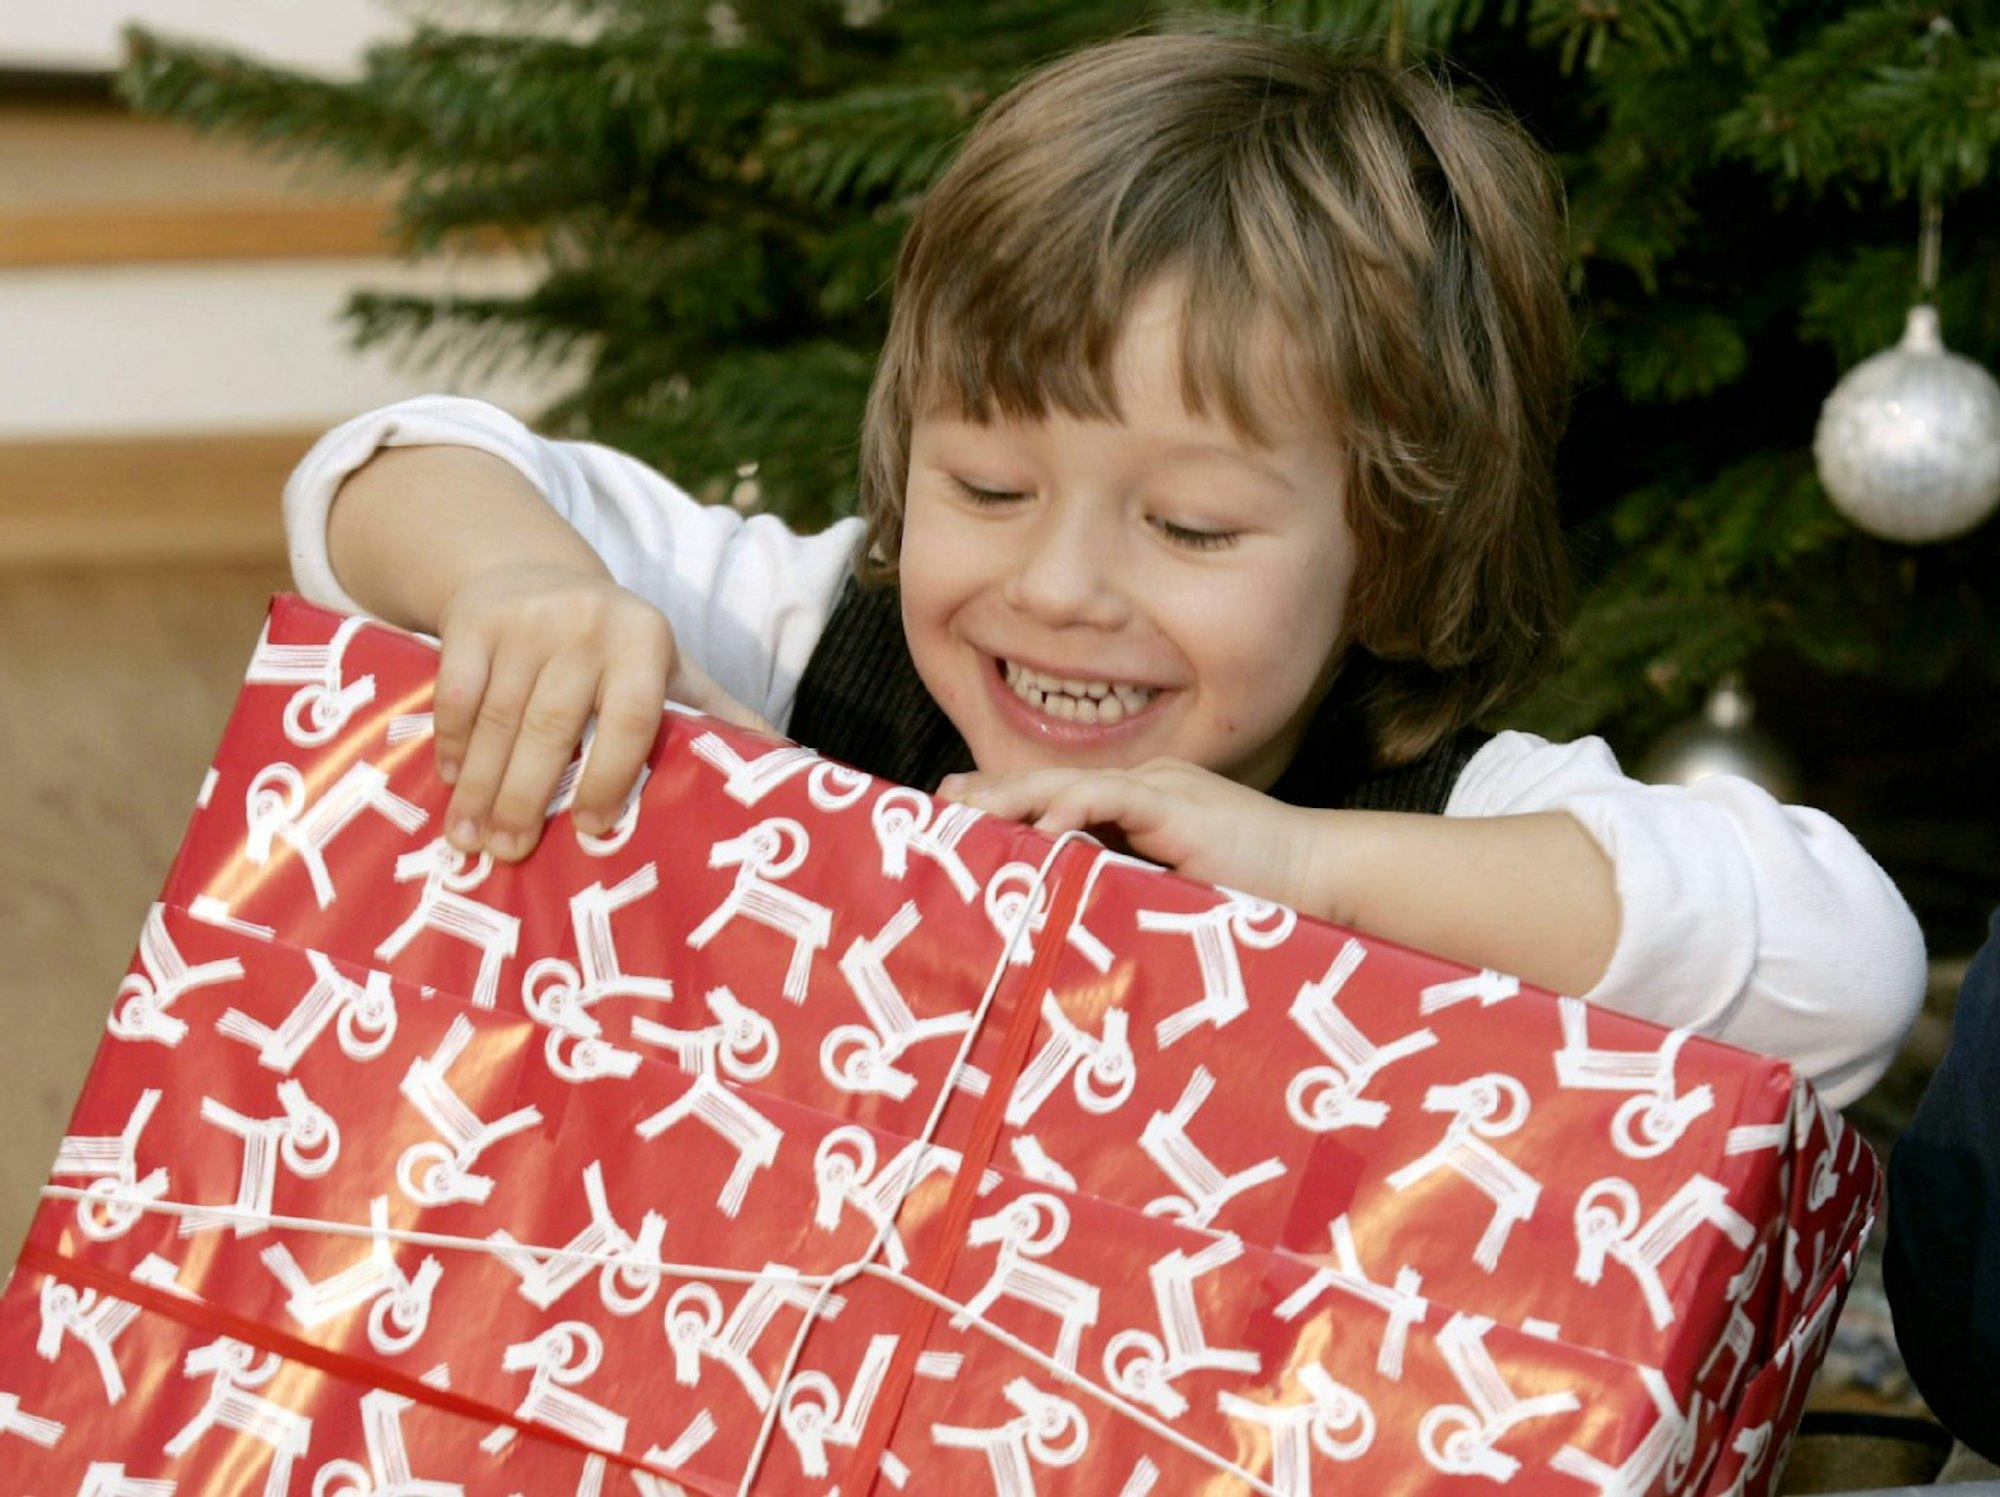 Wenn Eltern gut zuhören, können sie leicht herausfinden, was der Herzenswunsch des Kindes zu Weihnachten ist.